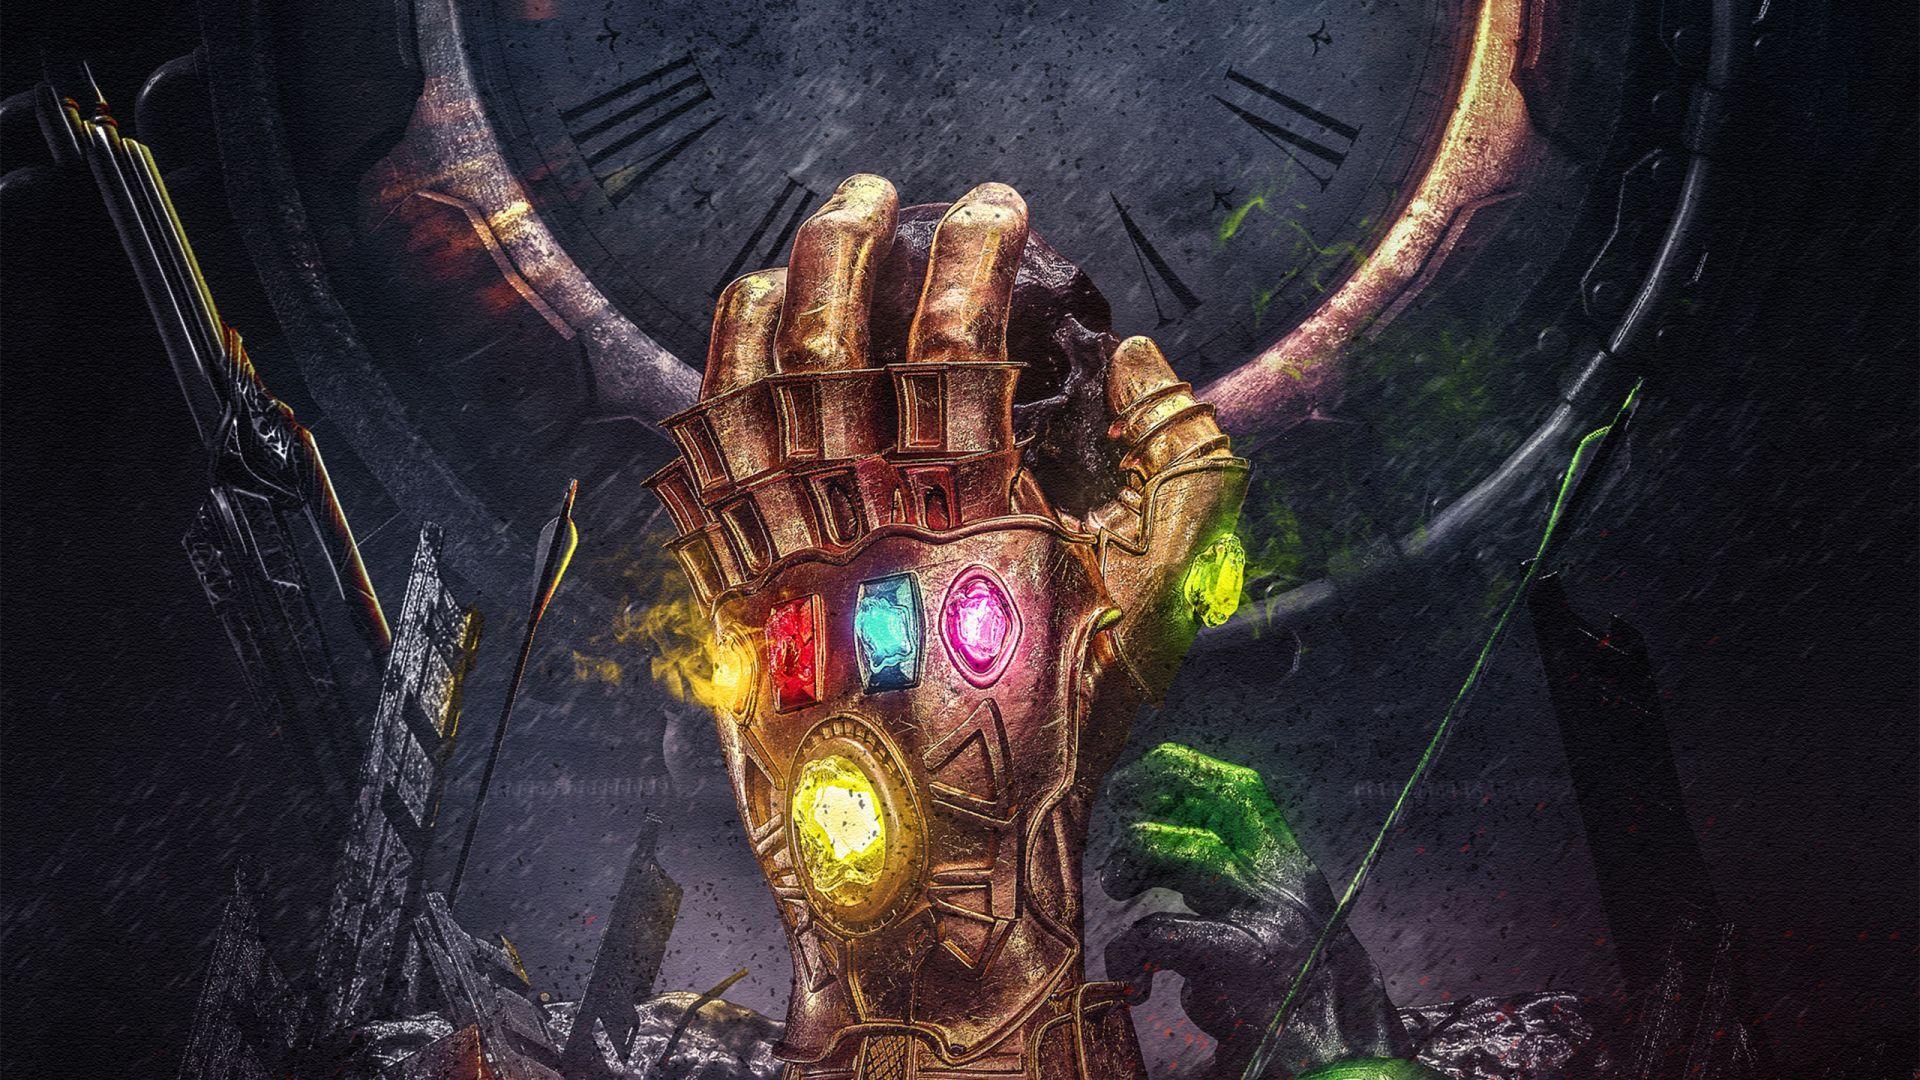 Download wallpaper of Infinity Gauntlet, Thanos, Infinity Stones